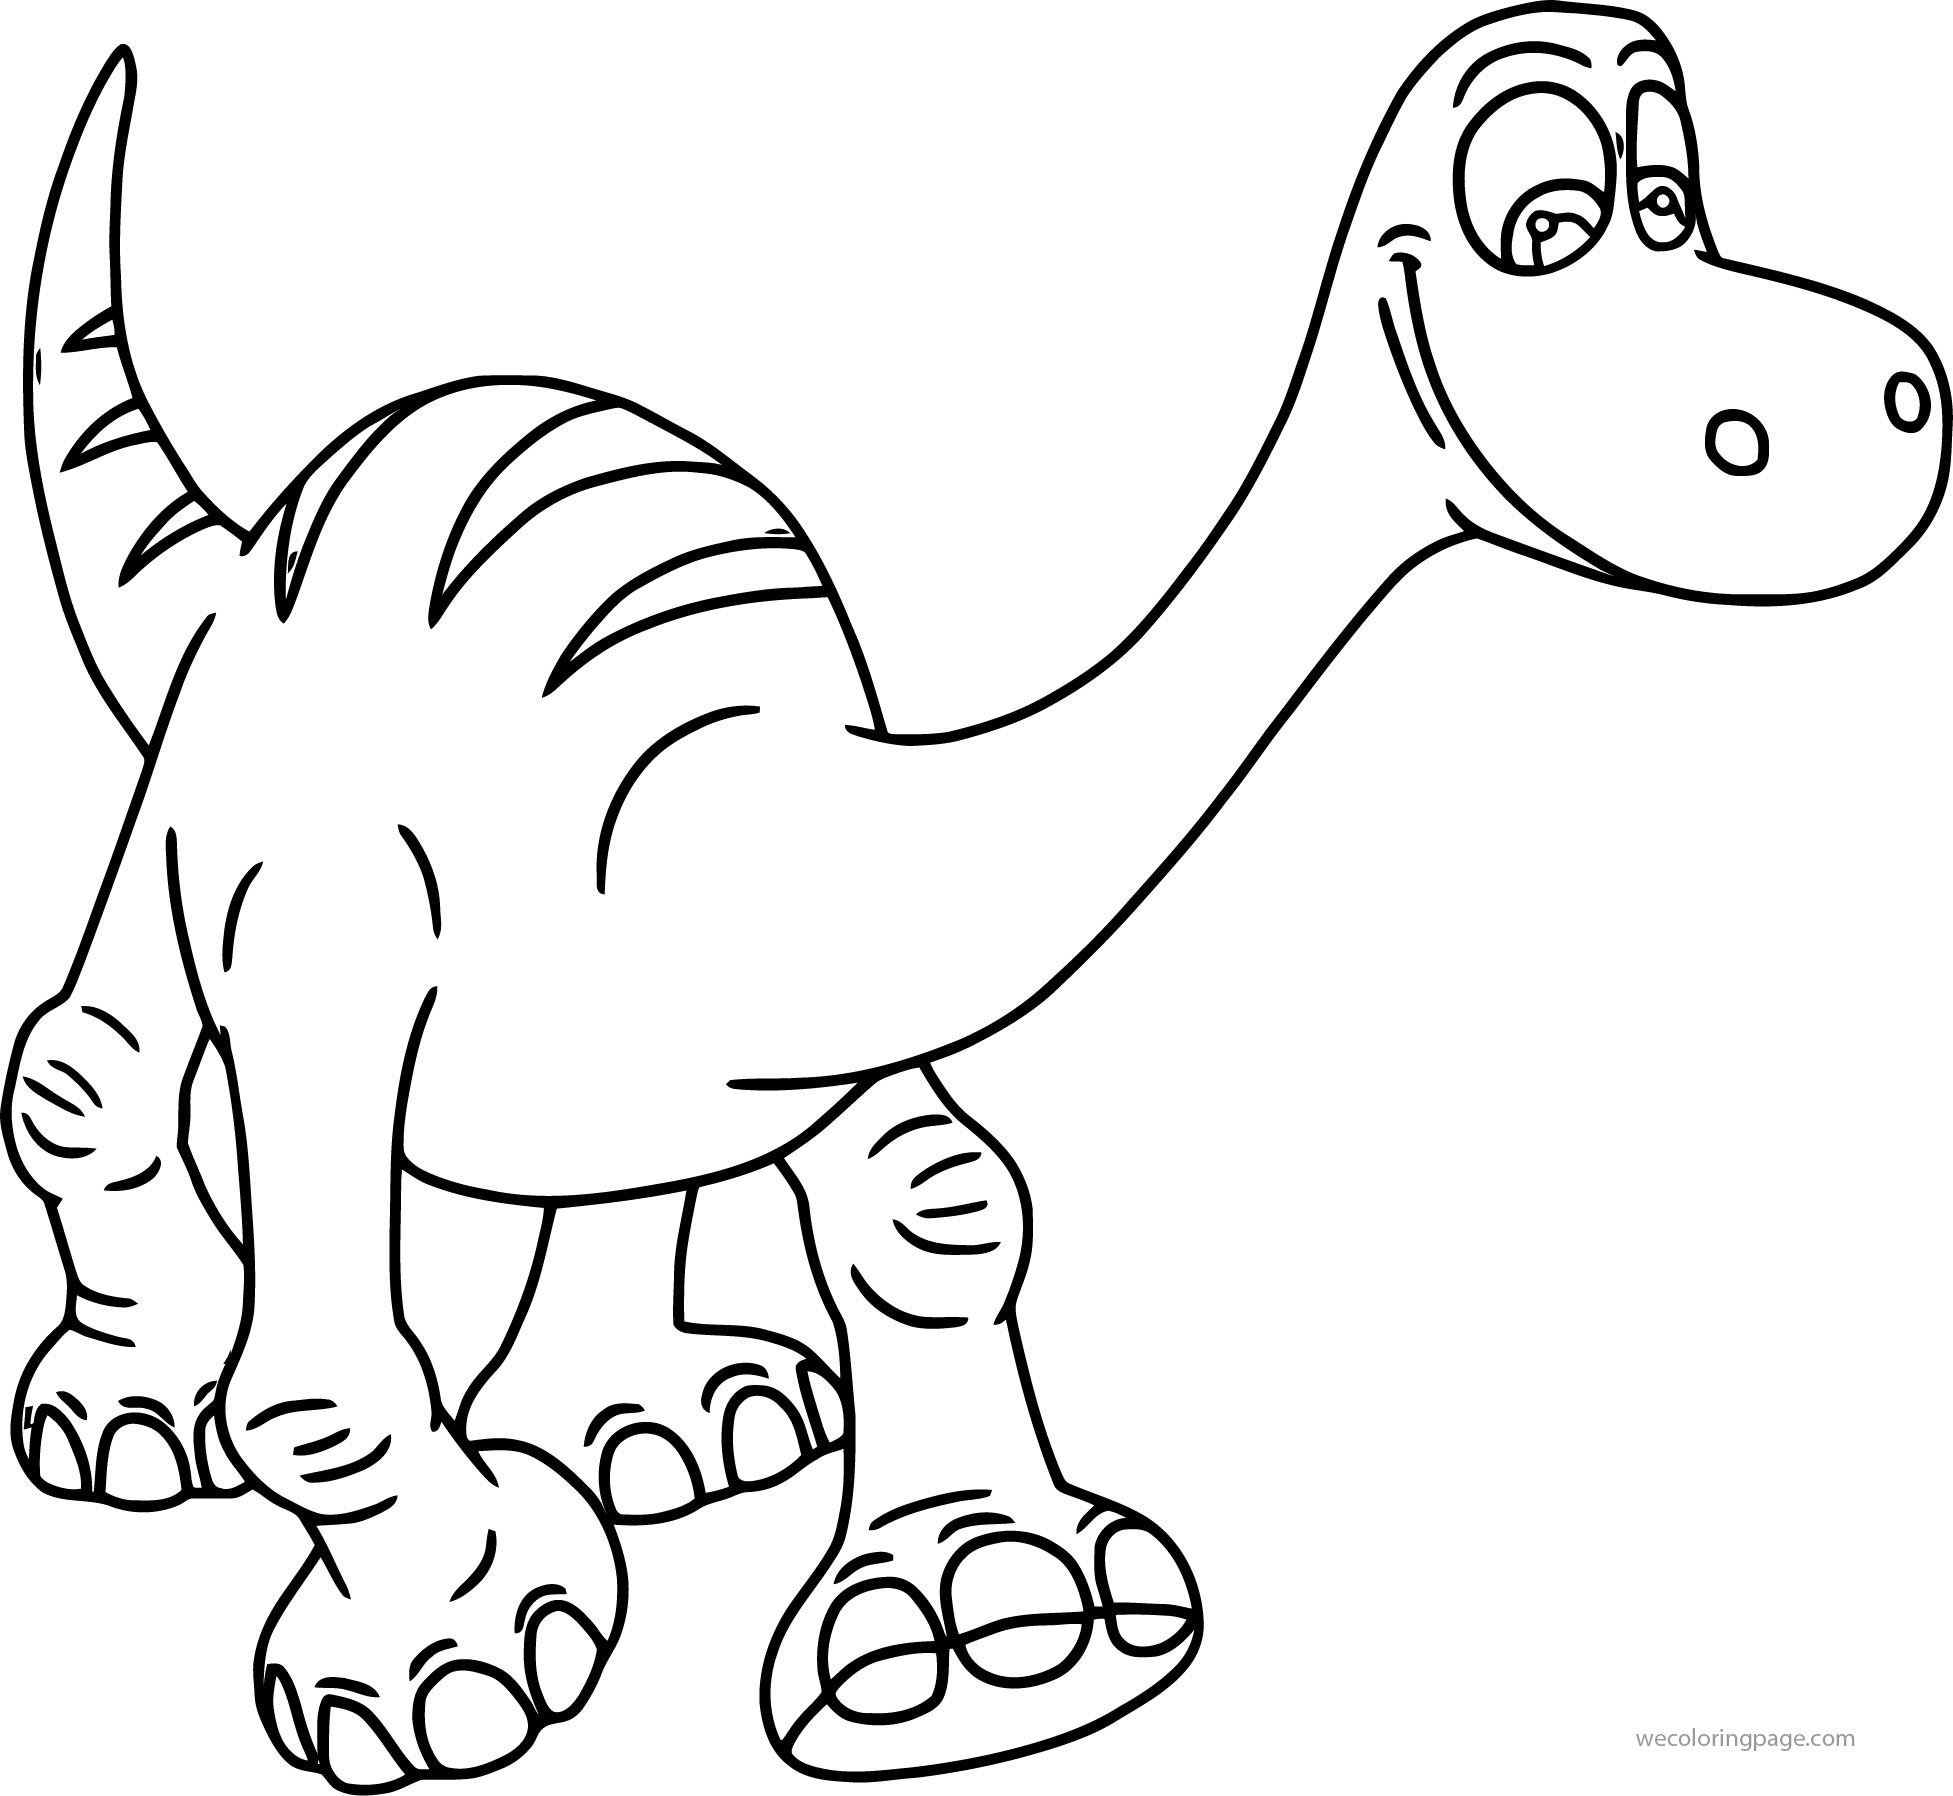 Раскраски динозавры формат а4. Динозавры / раскраска. Раскраска "Динозаврики". Динозавр раскраска для детей. Раскраски для мальчиков динозавры.